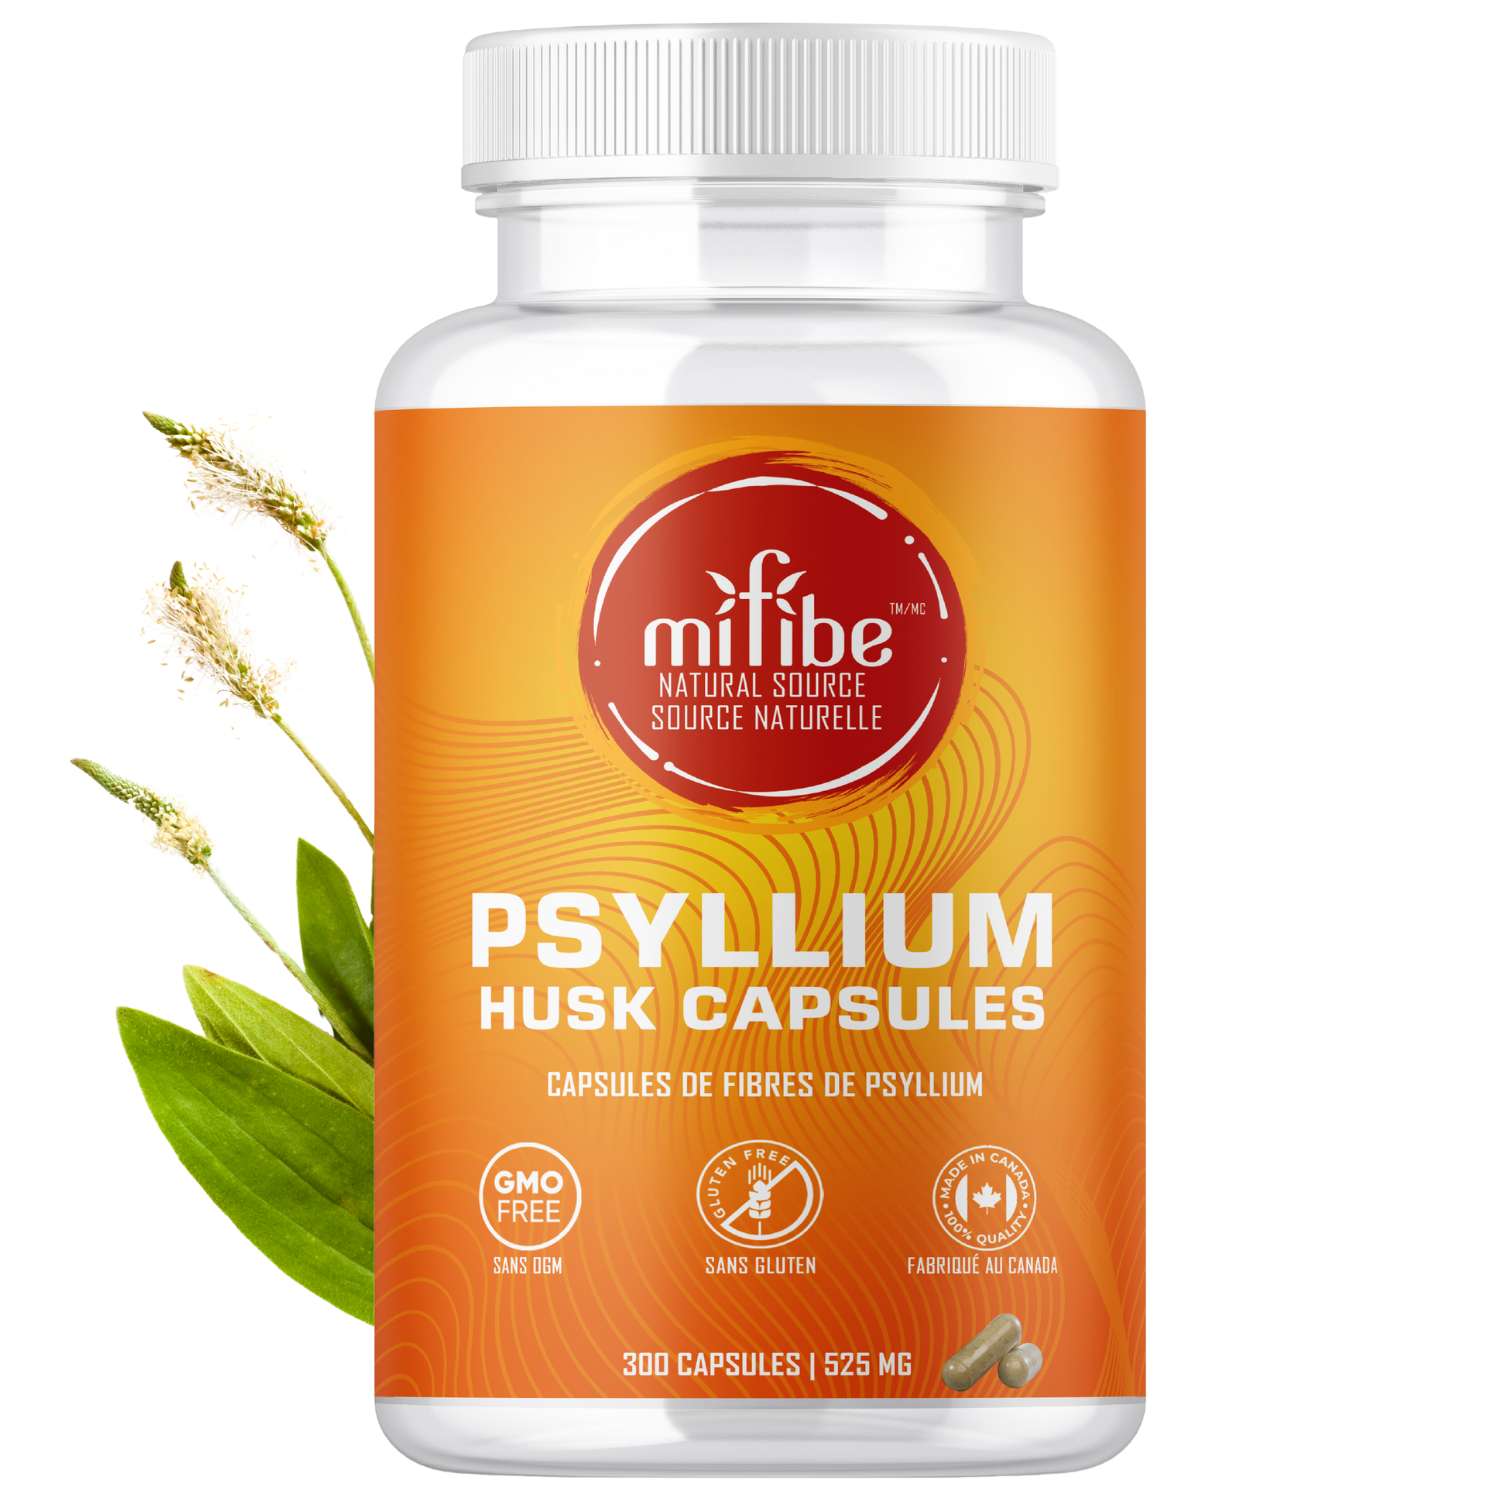 Capsules de fibres de cosse de psyllium - 525 mg par capsule - 300 capsules